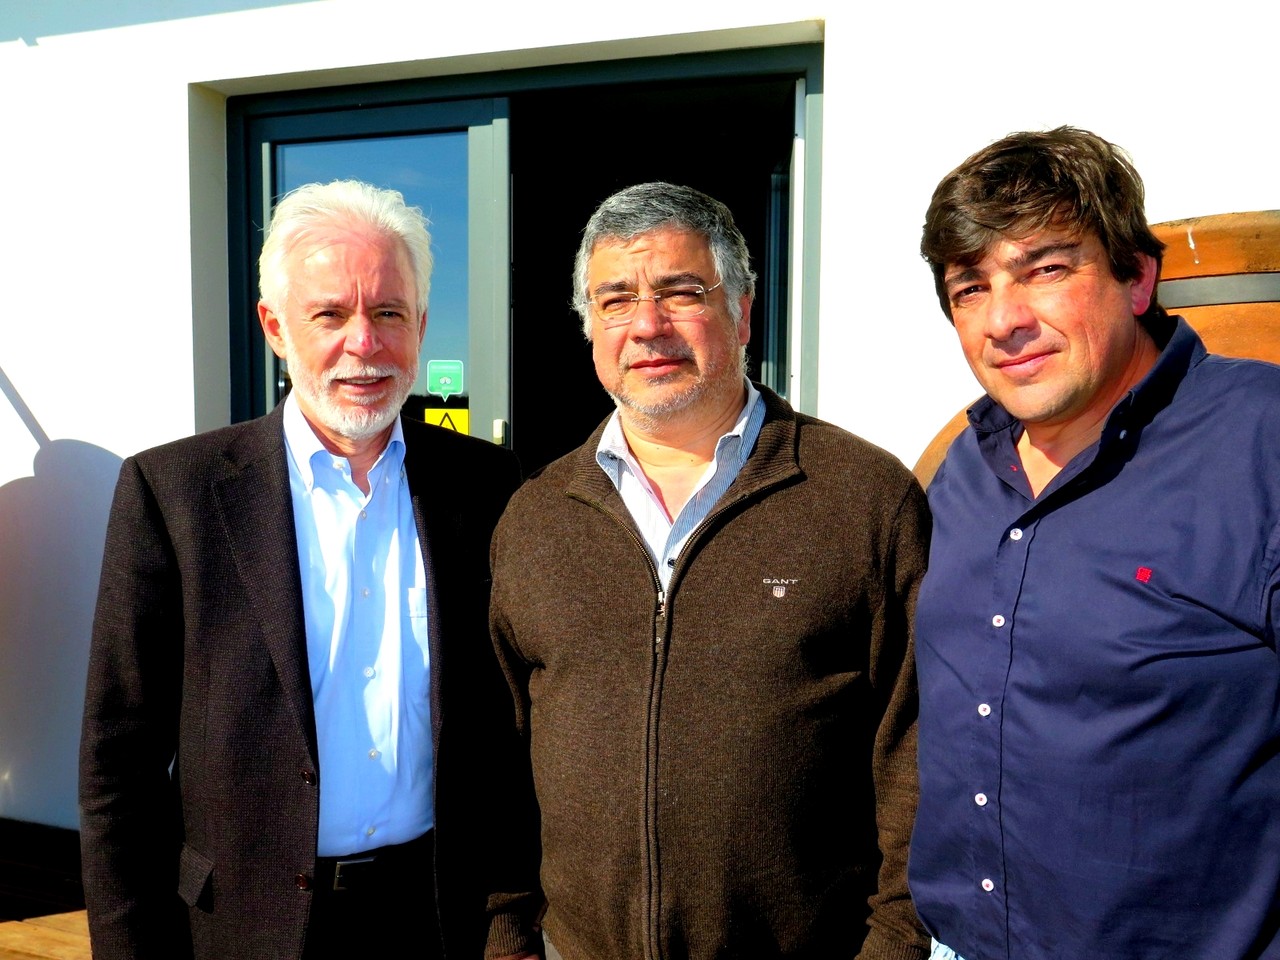 Manuel Narra, Presidente da Câmara Municipal de Vidigueira, entre os dois sócios da Ribafreixo Wines, Manuel Pinheiro e Nuno Bicó